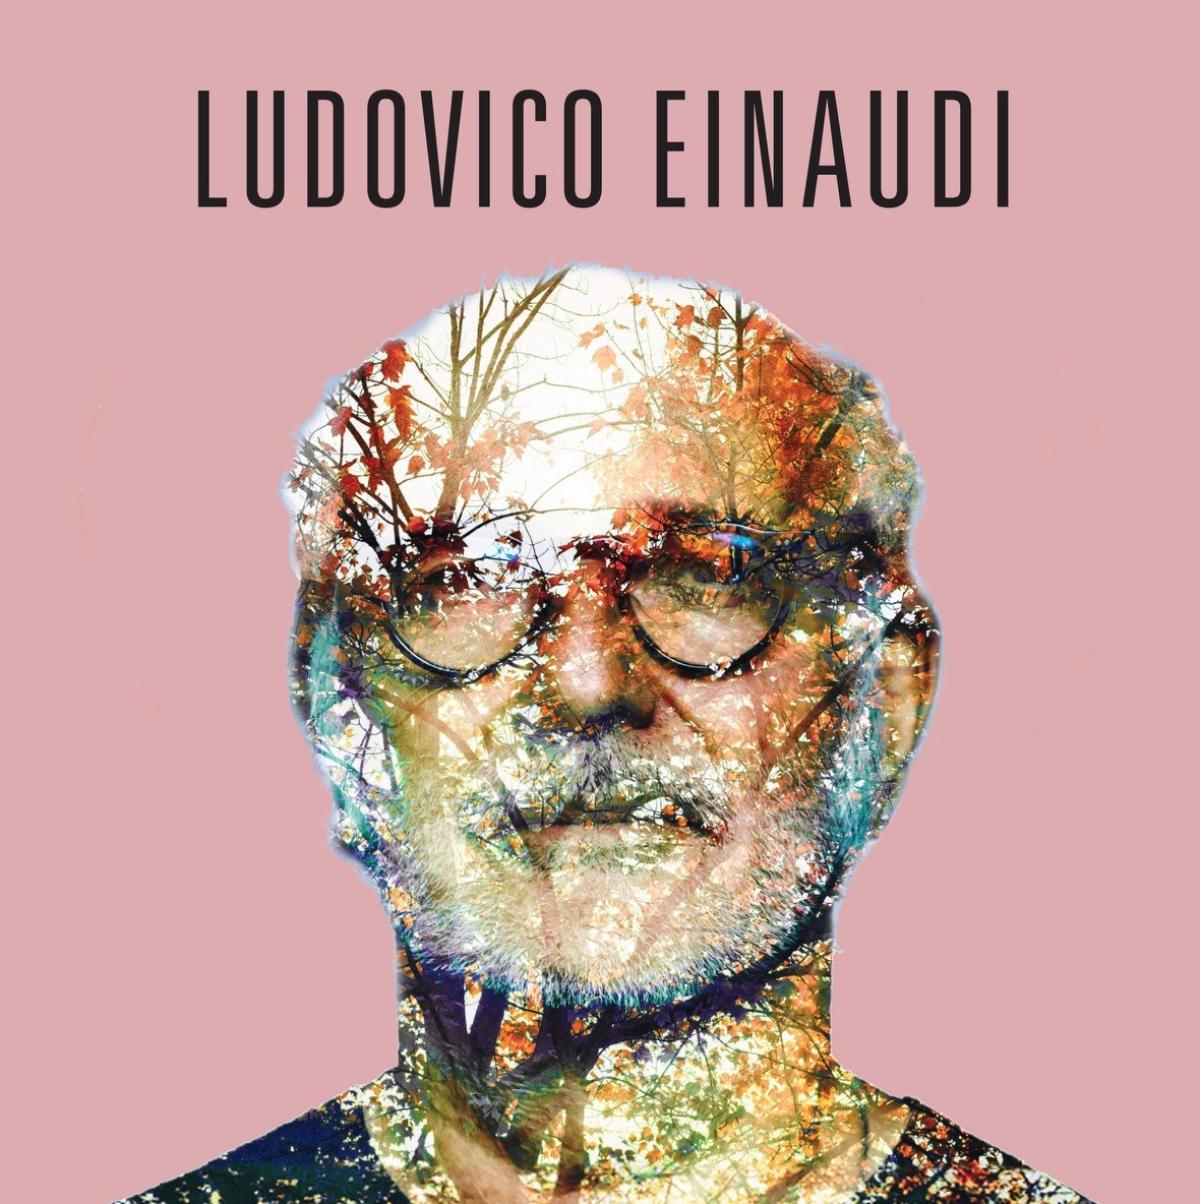 Billets Ludovico Einaudi (Theatre Antique Vienne - Vienne)